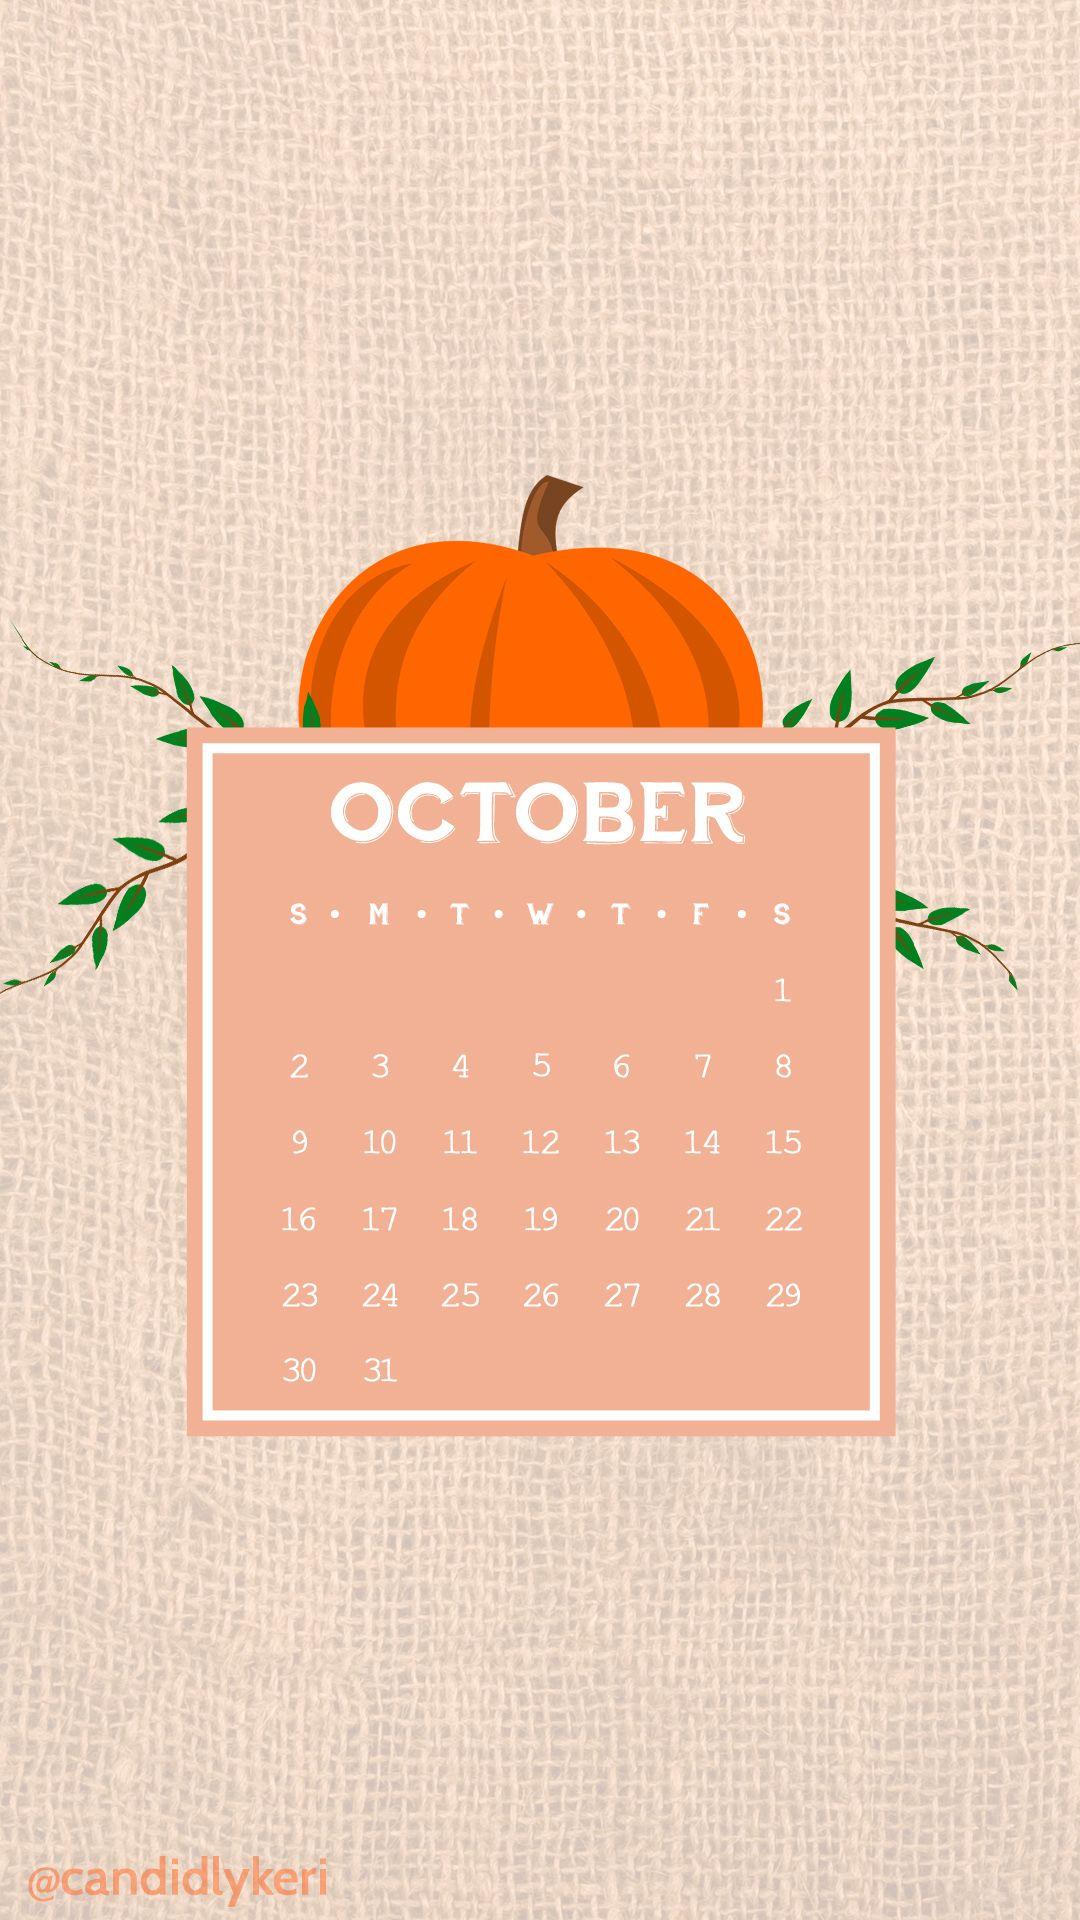 Cute cartoon pumpkin vector burlap sack October calendar 2016